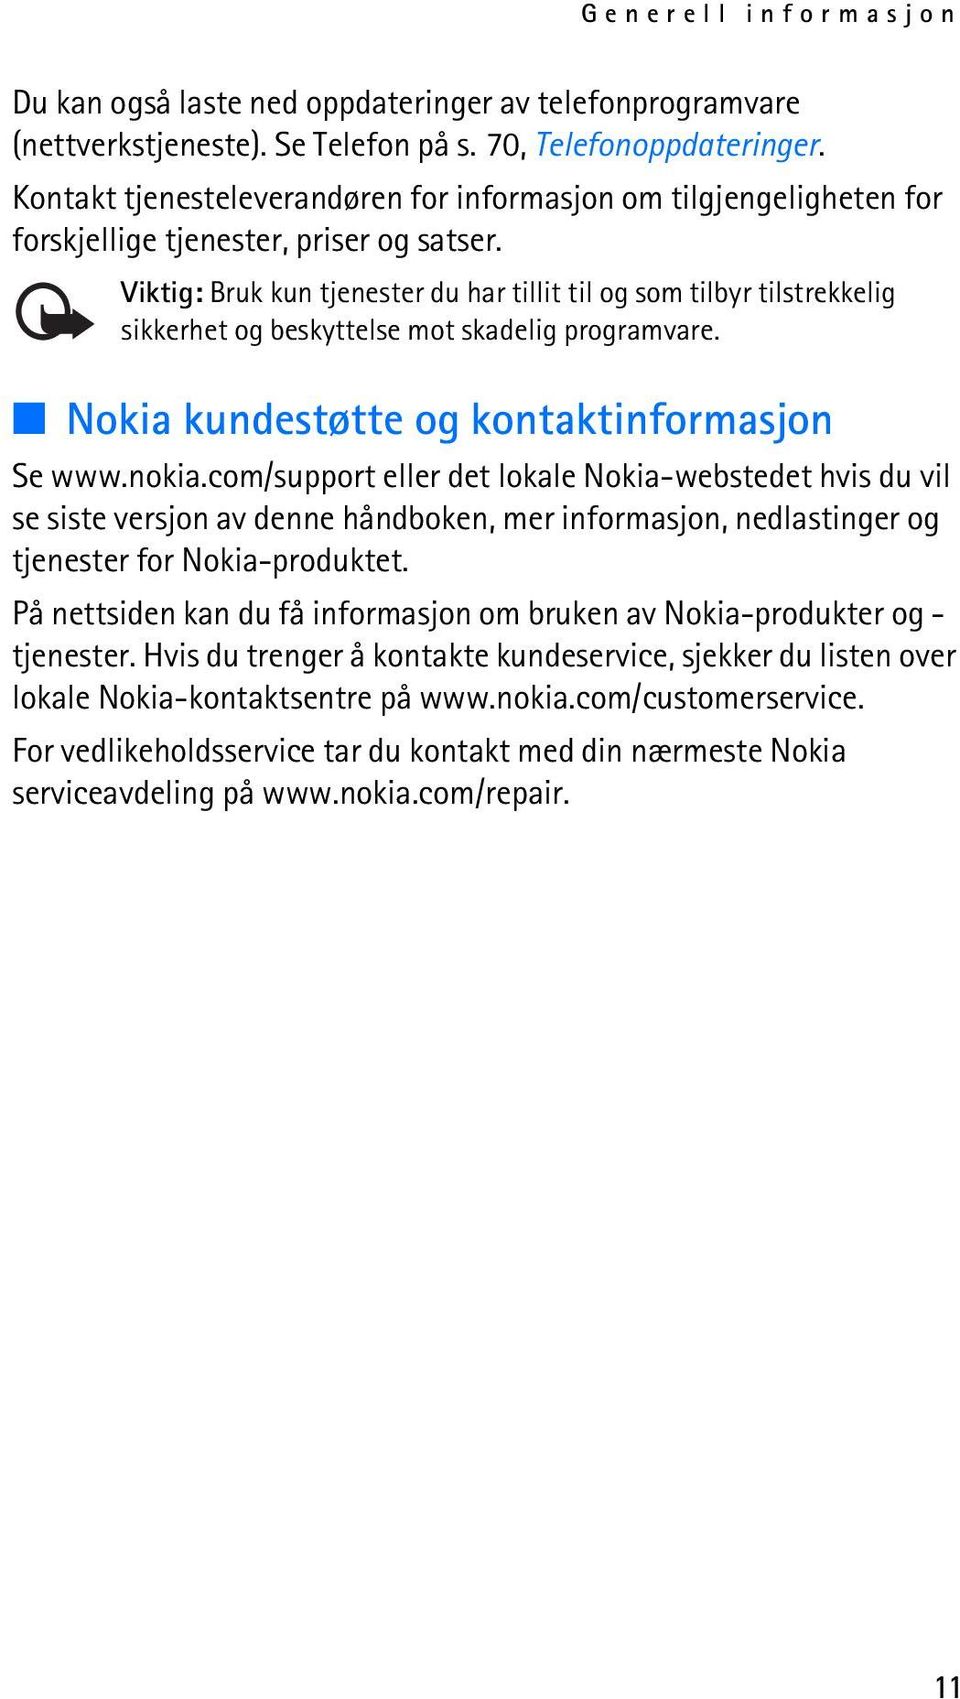 Viktig: Bruk kun tjenester du har tillit til og som tilbyr tilstrekkelig sikkerhet og beskyttelse mot skadelig programvare. Nokia kundestøtte og kontaktinformasjon Se www.nokia.